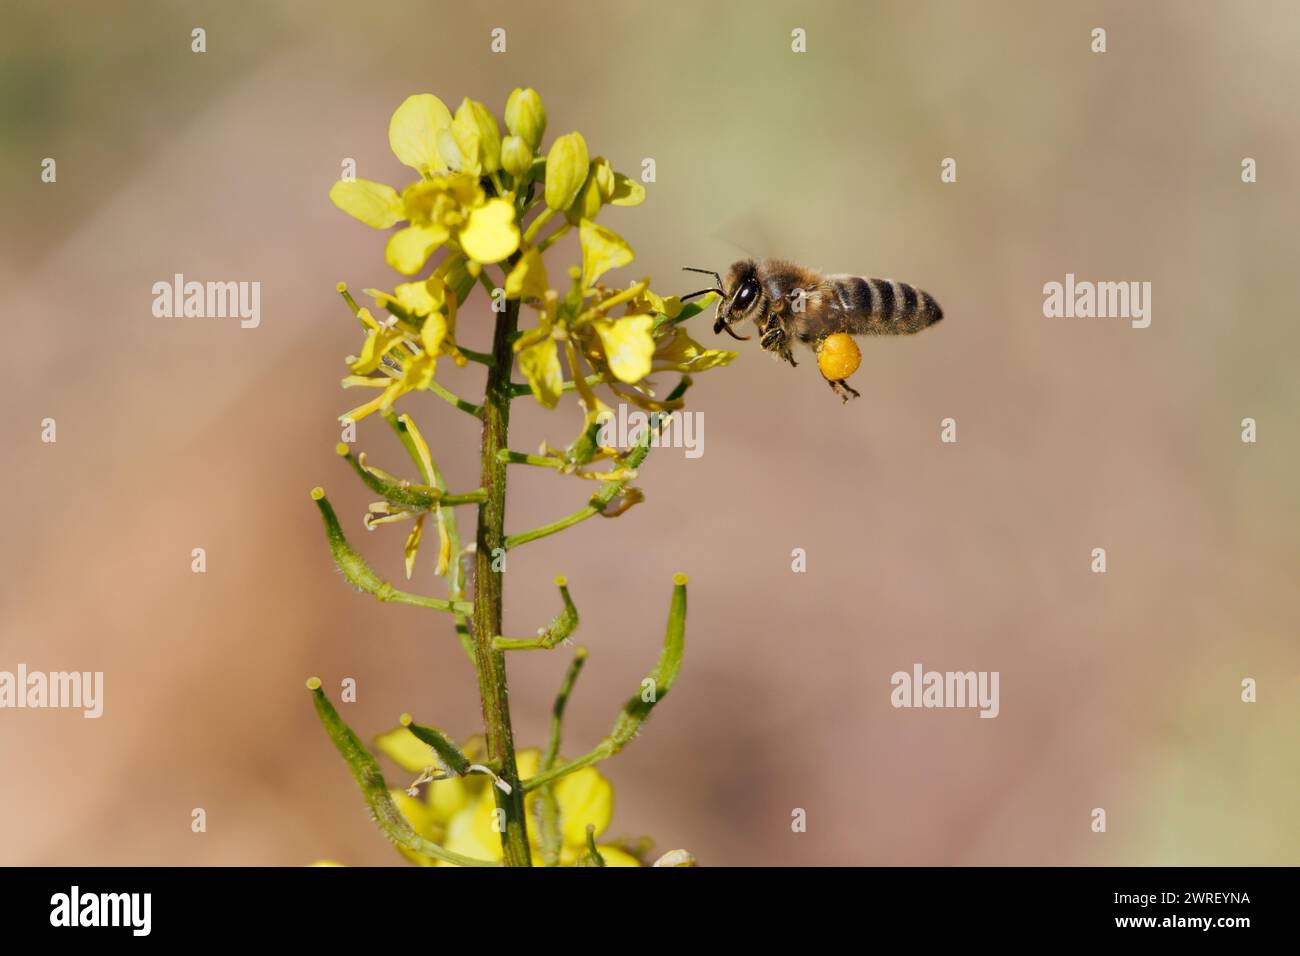 Apis mellifera, abeille européenne, volant et approchant des fleurs jaunes avec la corbicule pleine de pollen dans l'Albufera de Gaianes, Espagne Banque D'Images